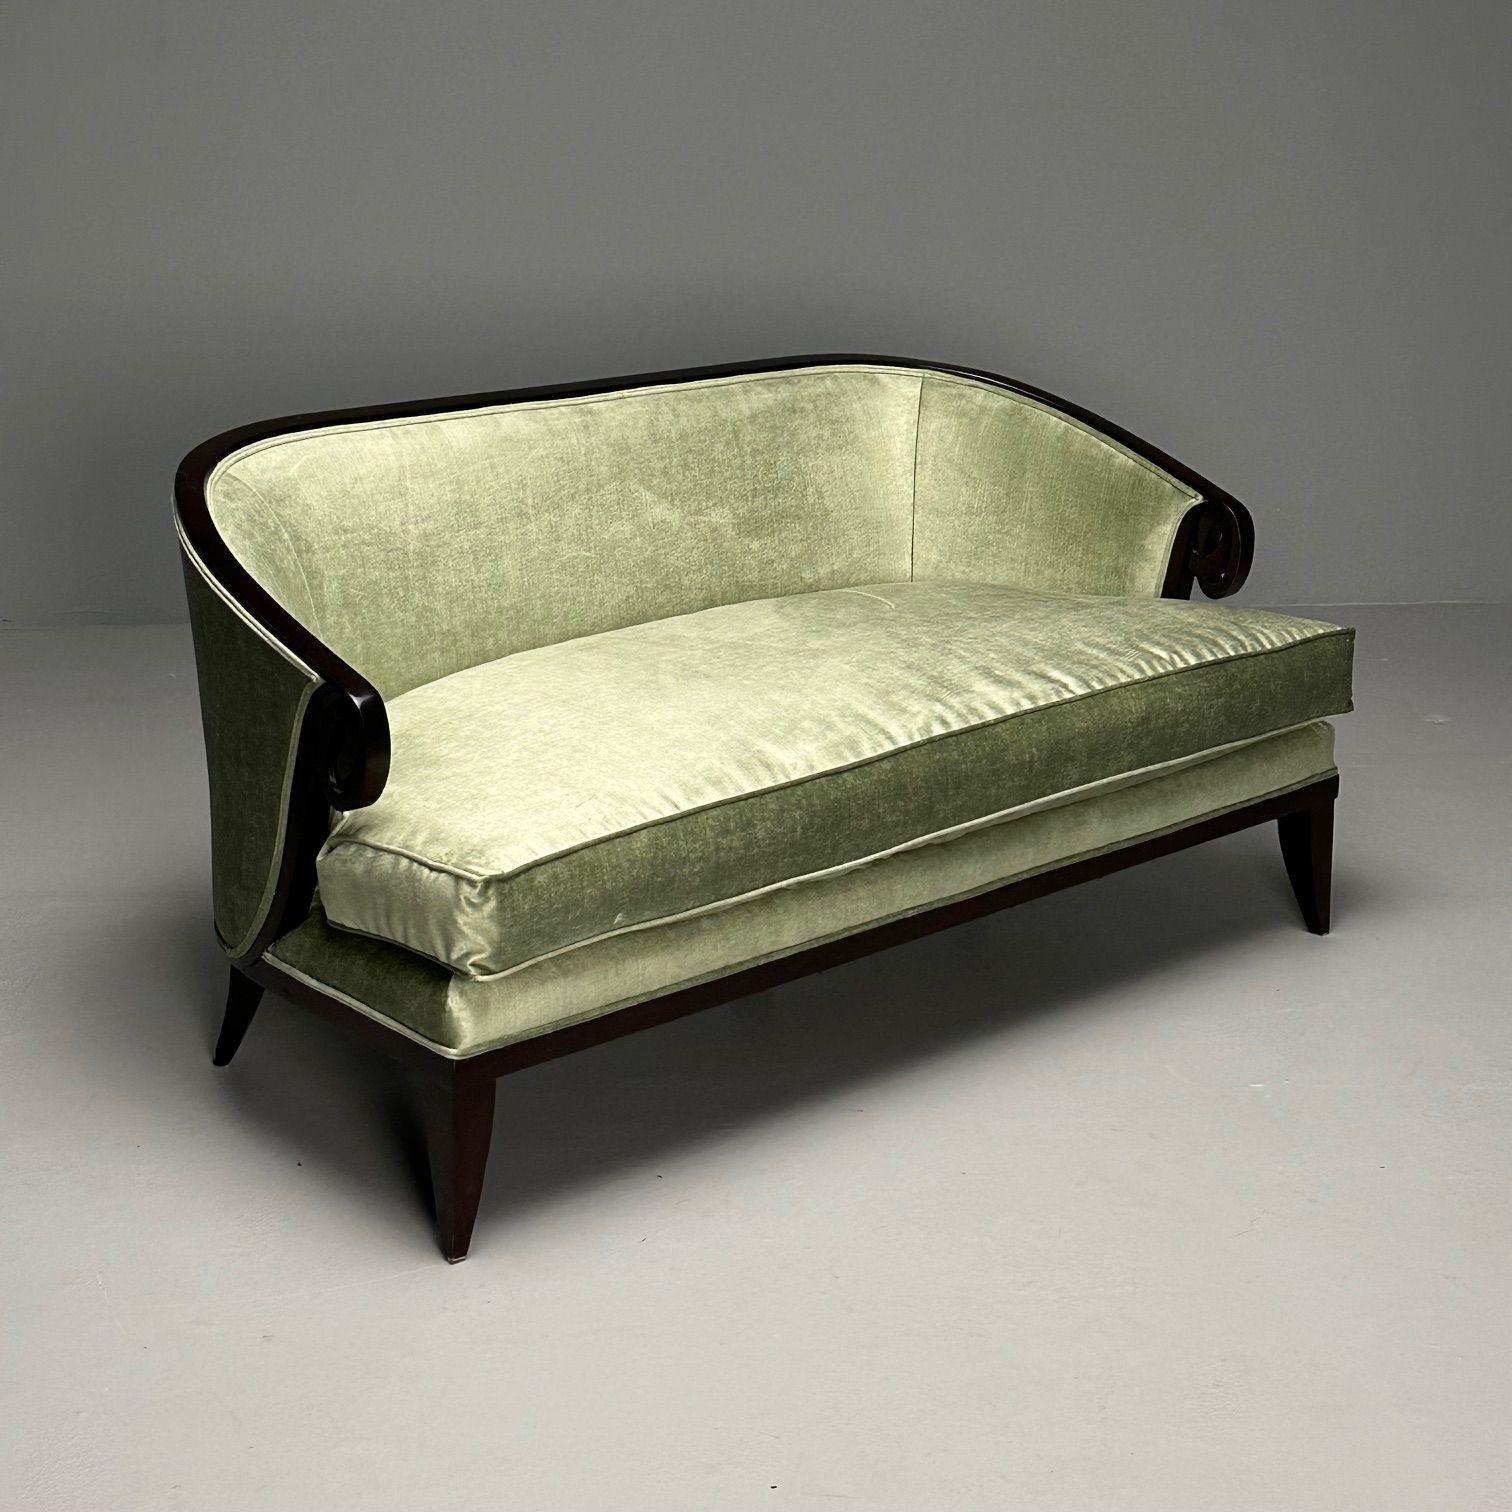 Christopher Guy, Contemporary, Modern Biarritz Sofa, Mint Green Velvet, Black Wood

Modèle de canapé 